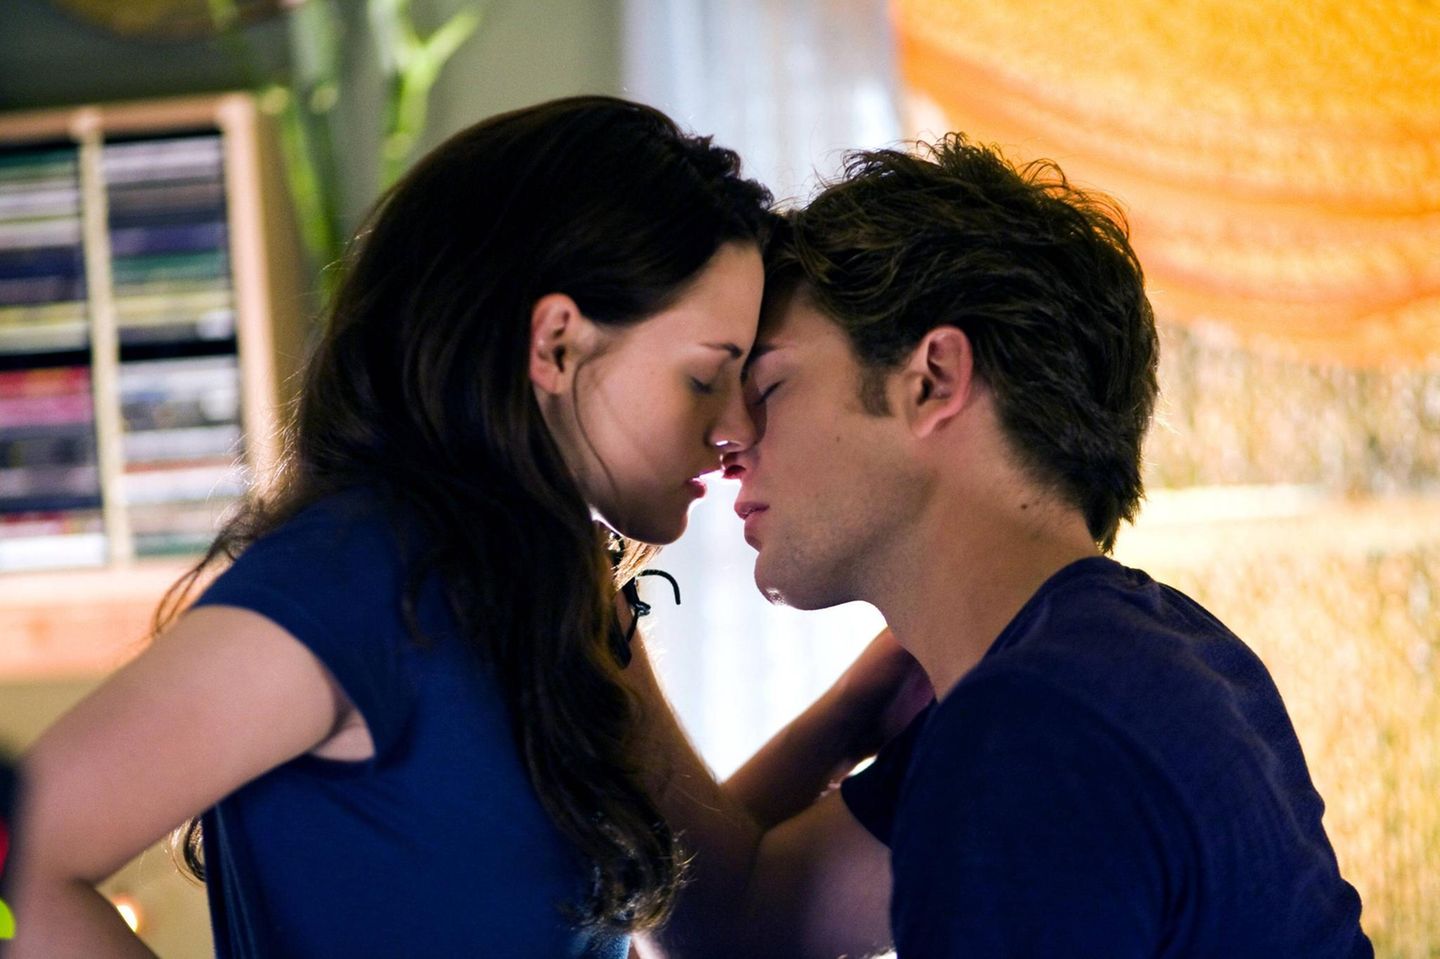 Kristen Stewart als Bella Swan und Robert Pattinson als Edward Cullen 2008 in der ersten "Twilight"-Verfilmung